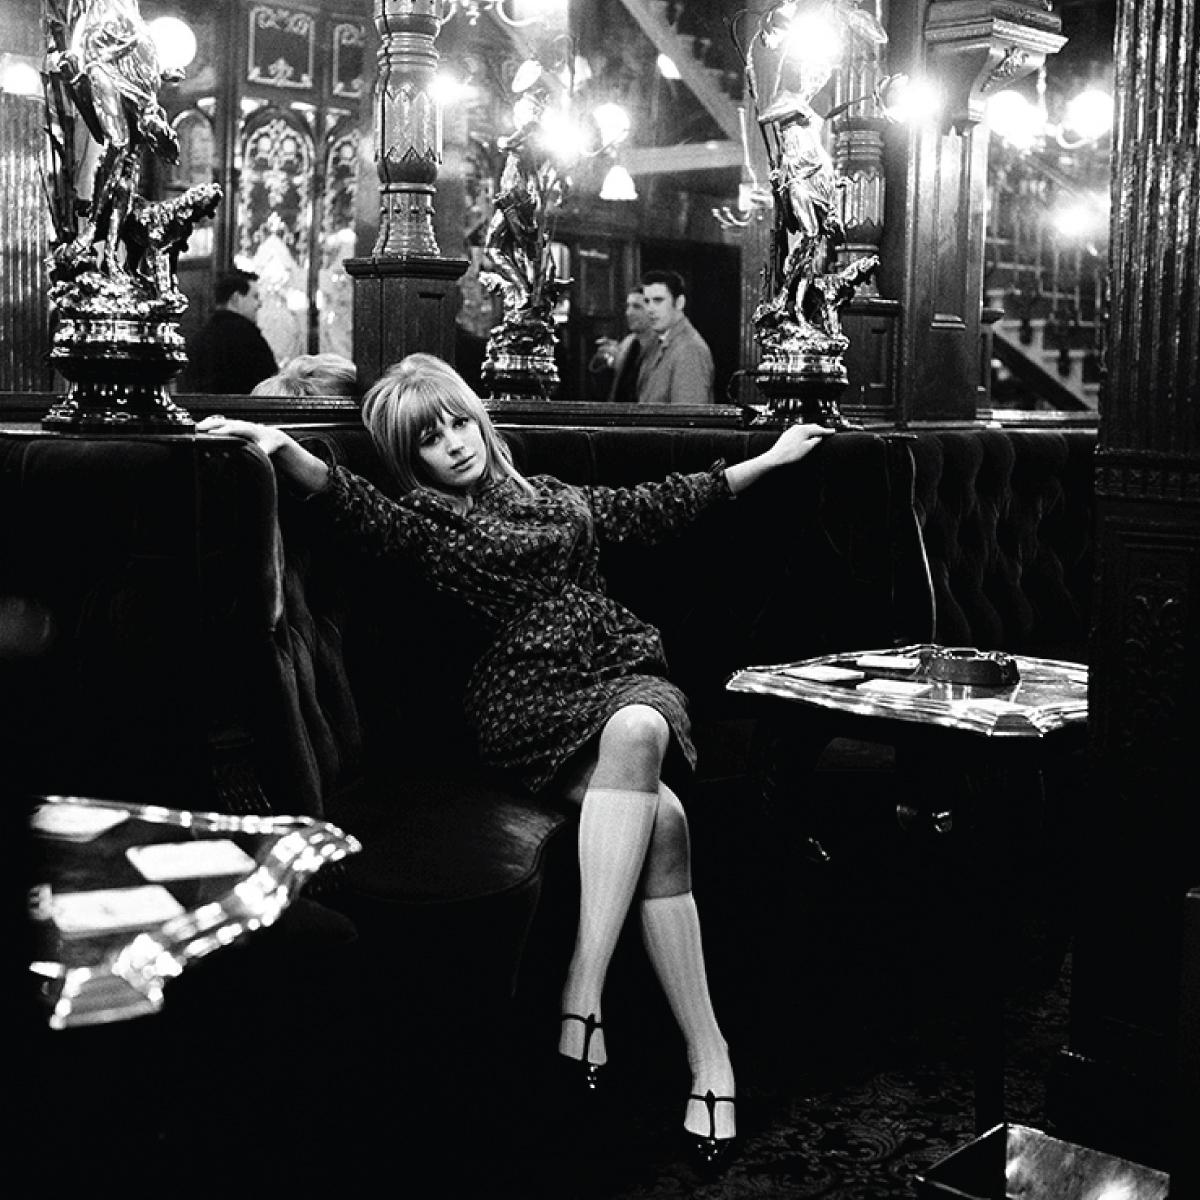 Die englische Sängerin, Songwriterin und Schauspielerin Marianne Faithfull, fotografiert im Pub The Salisbury in London, 1964.

Erhältlich in den folgenden Größen. Alle Drucke signiert und nummeriert von Gered Mankowitz

16x20" - Auflage 50
20x24" -